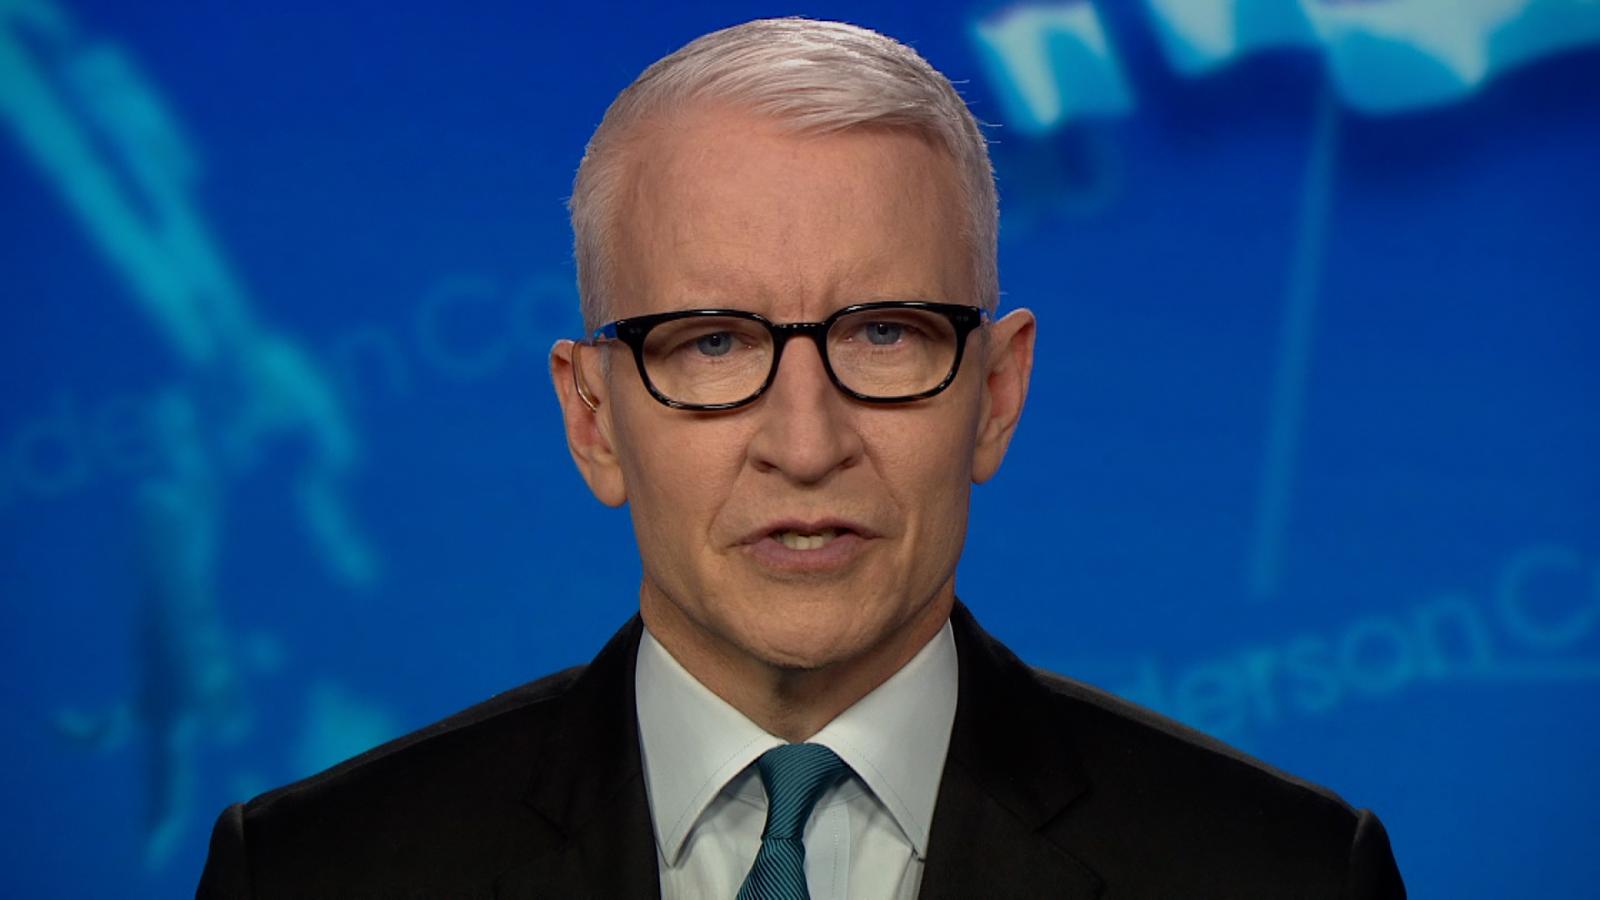 CNN Profiles Anderson Cooper CNN anchor CNN